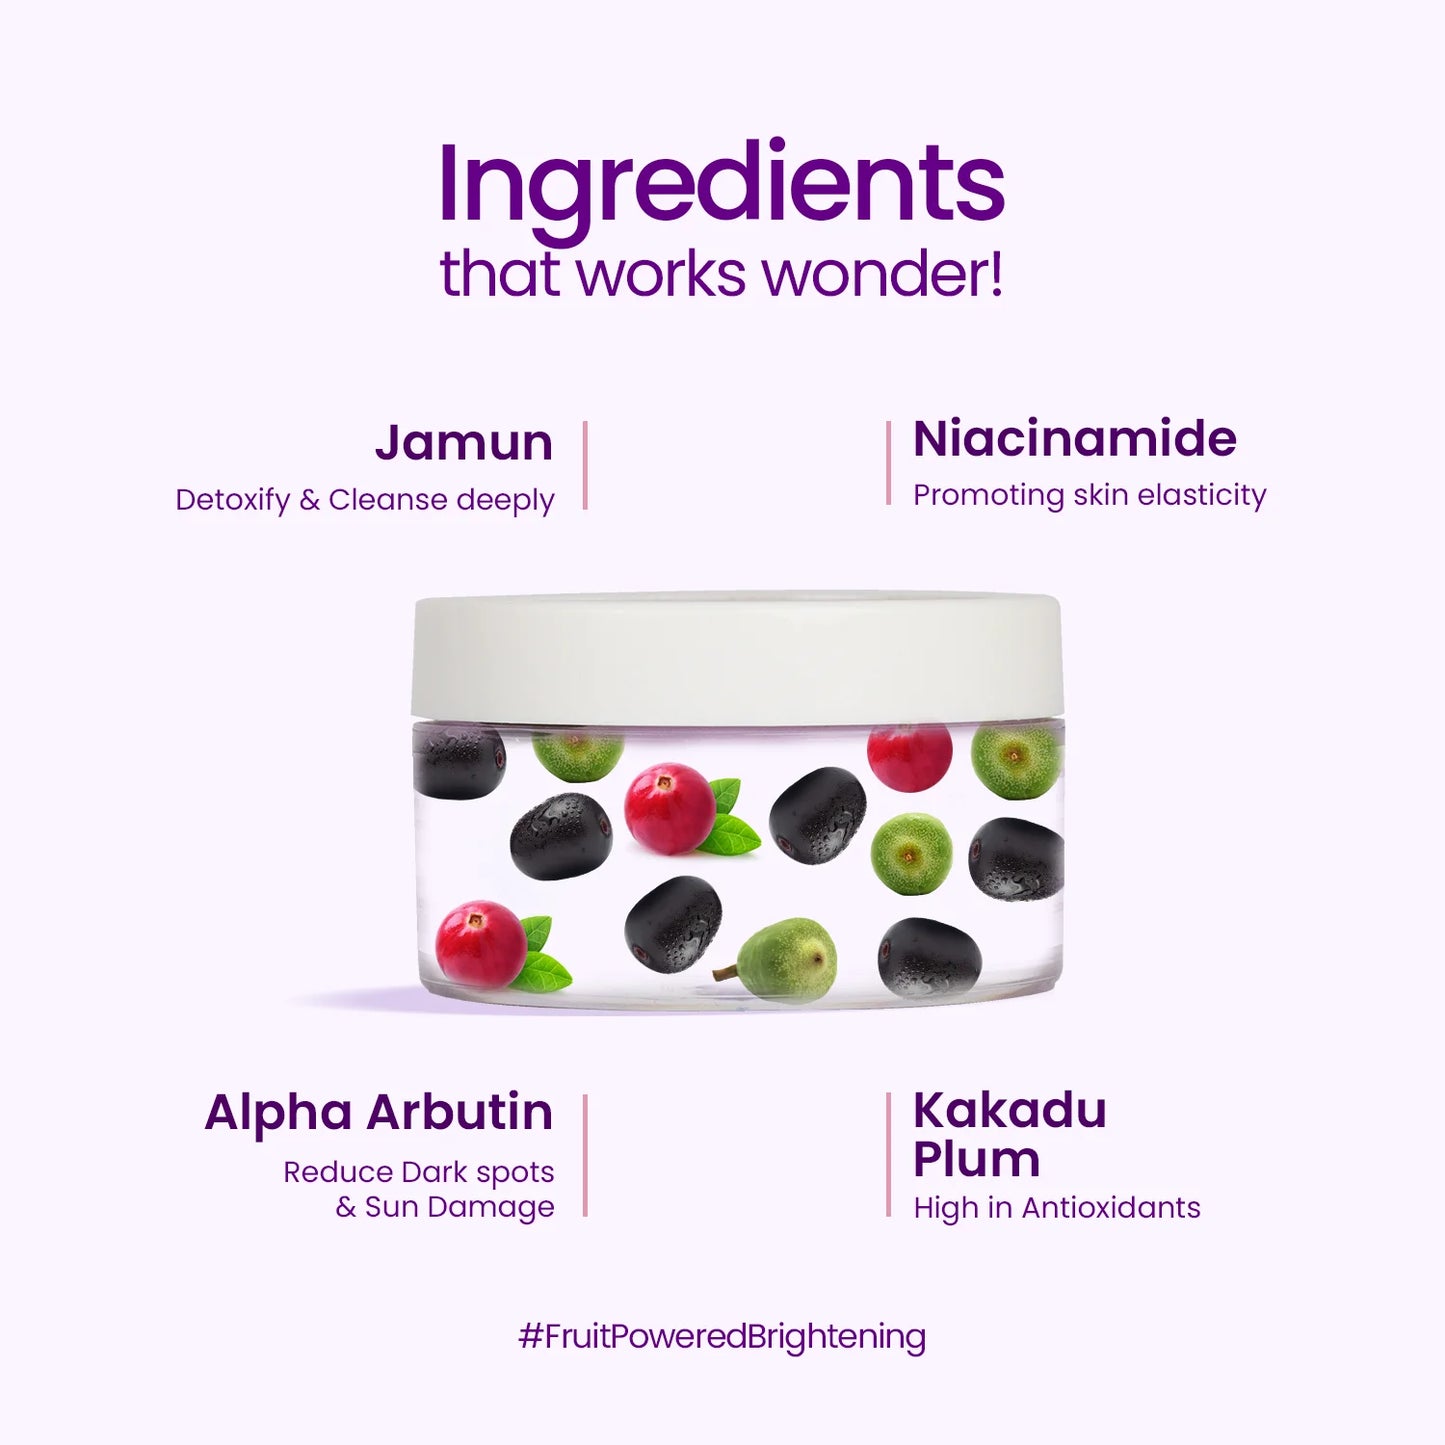 Made with Natural Ingredients like Jamun & Kakadu Plum